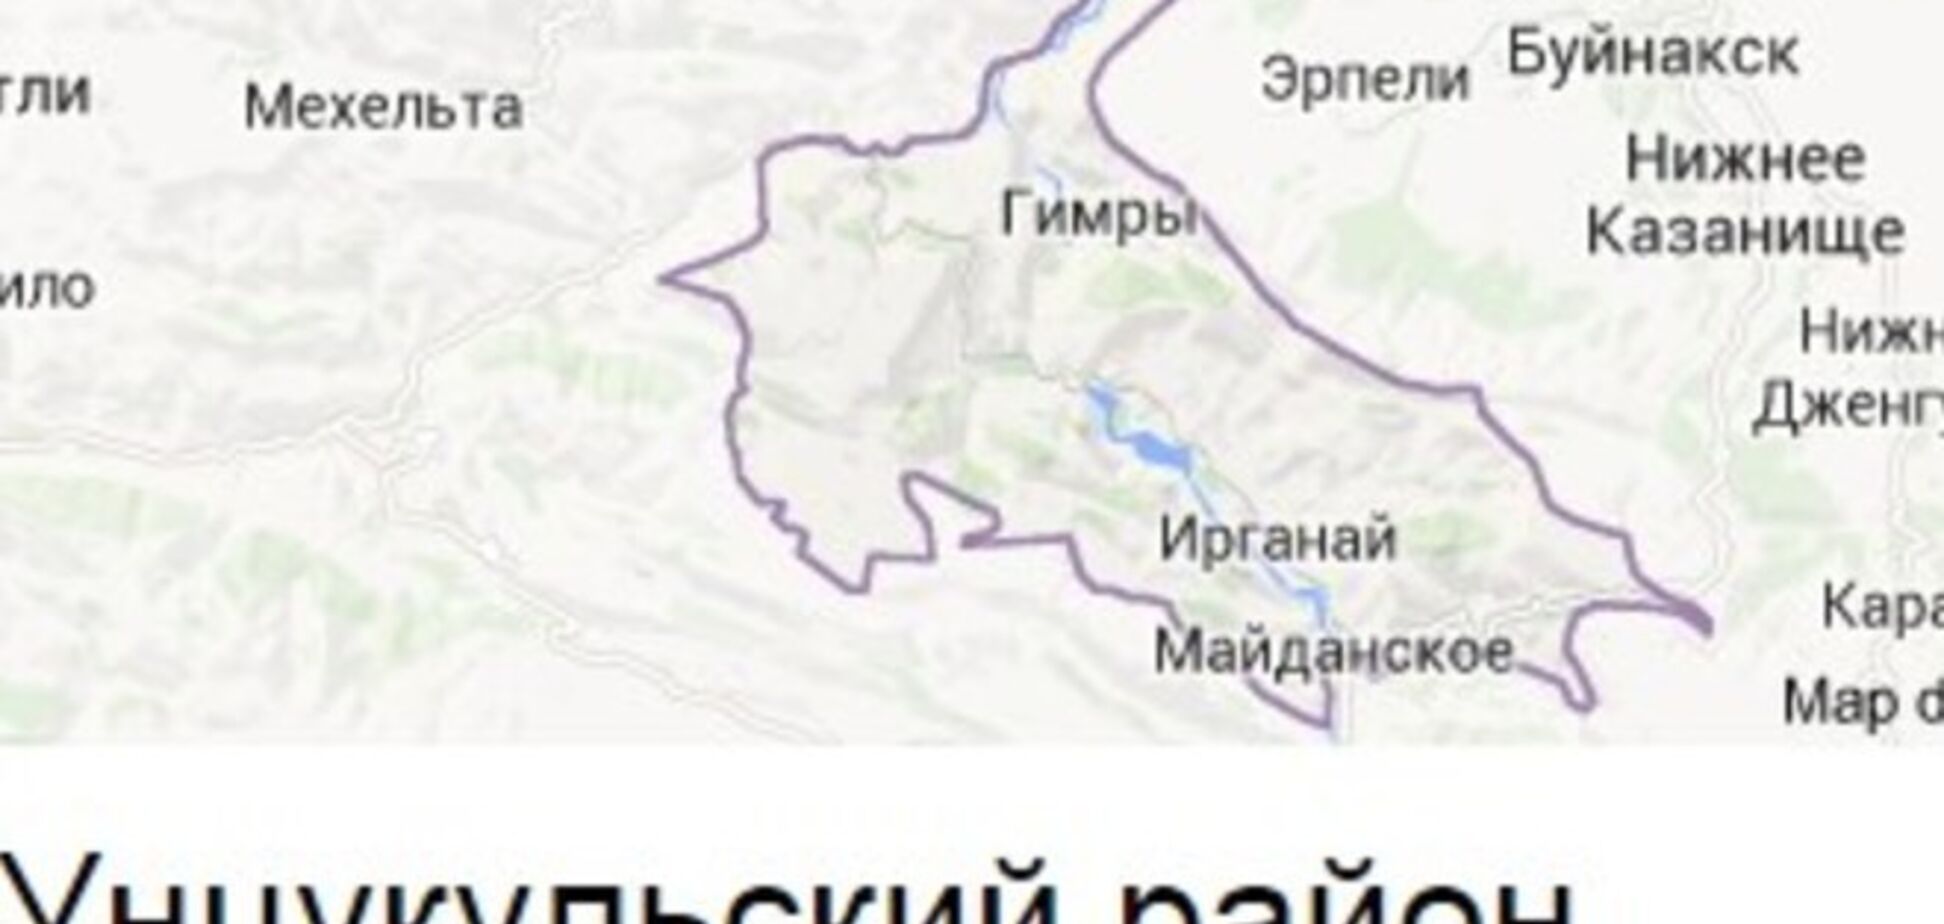 В Дагестане жители настаивают на прекращении карательной операции российских силовиков